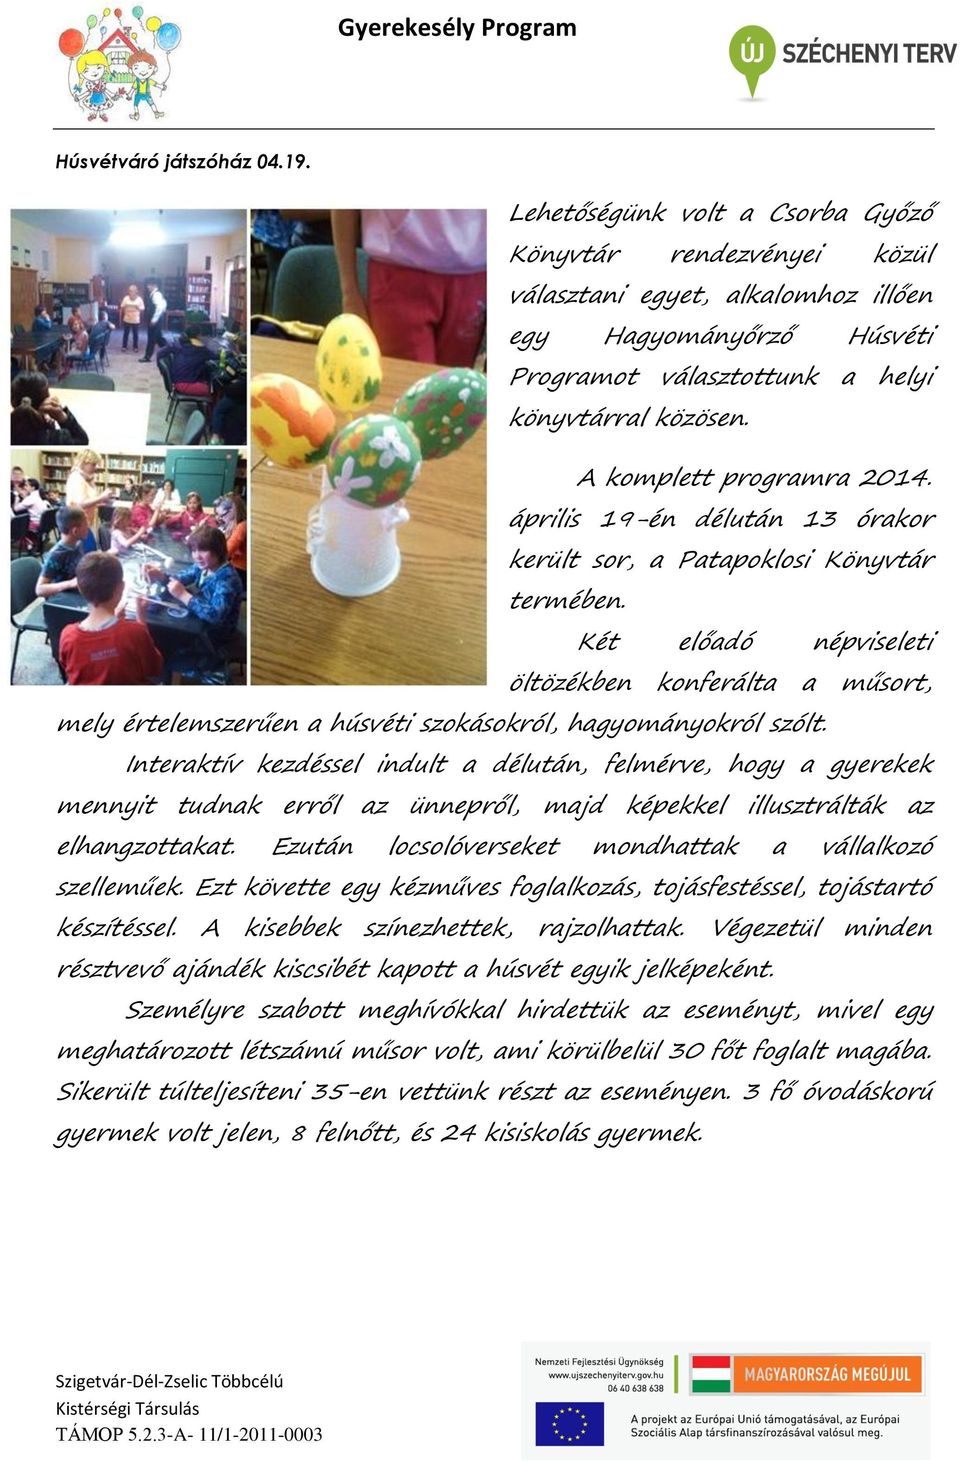 A komplett programra 2014. április 19-én délután 13 órakor került sor, a Patapoklosi Könyvtár termében.